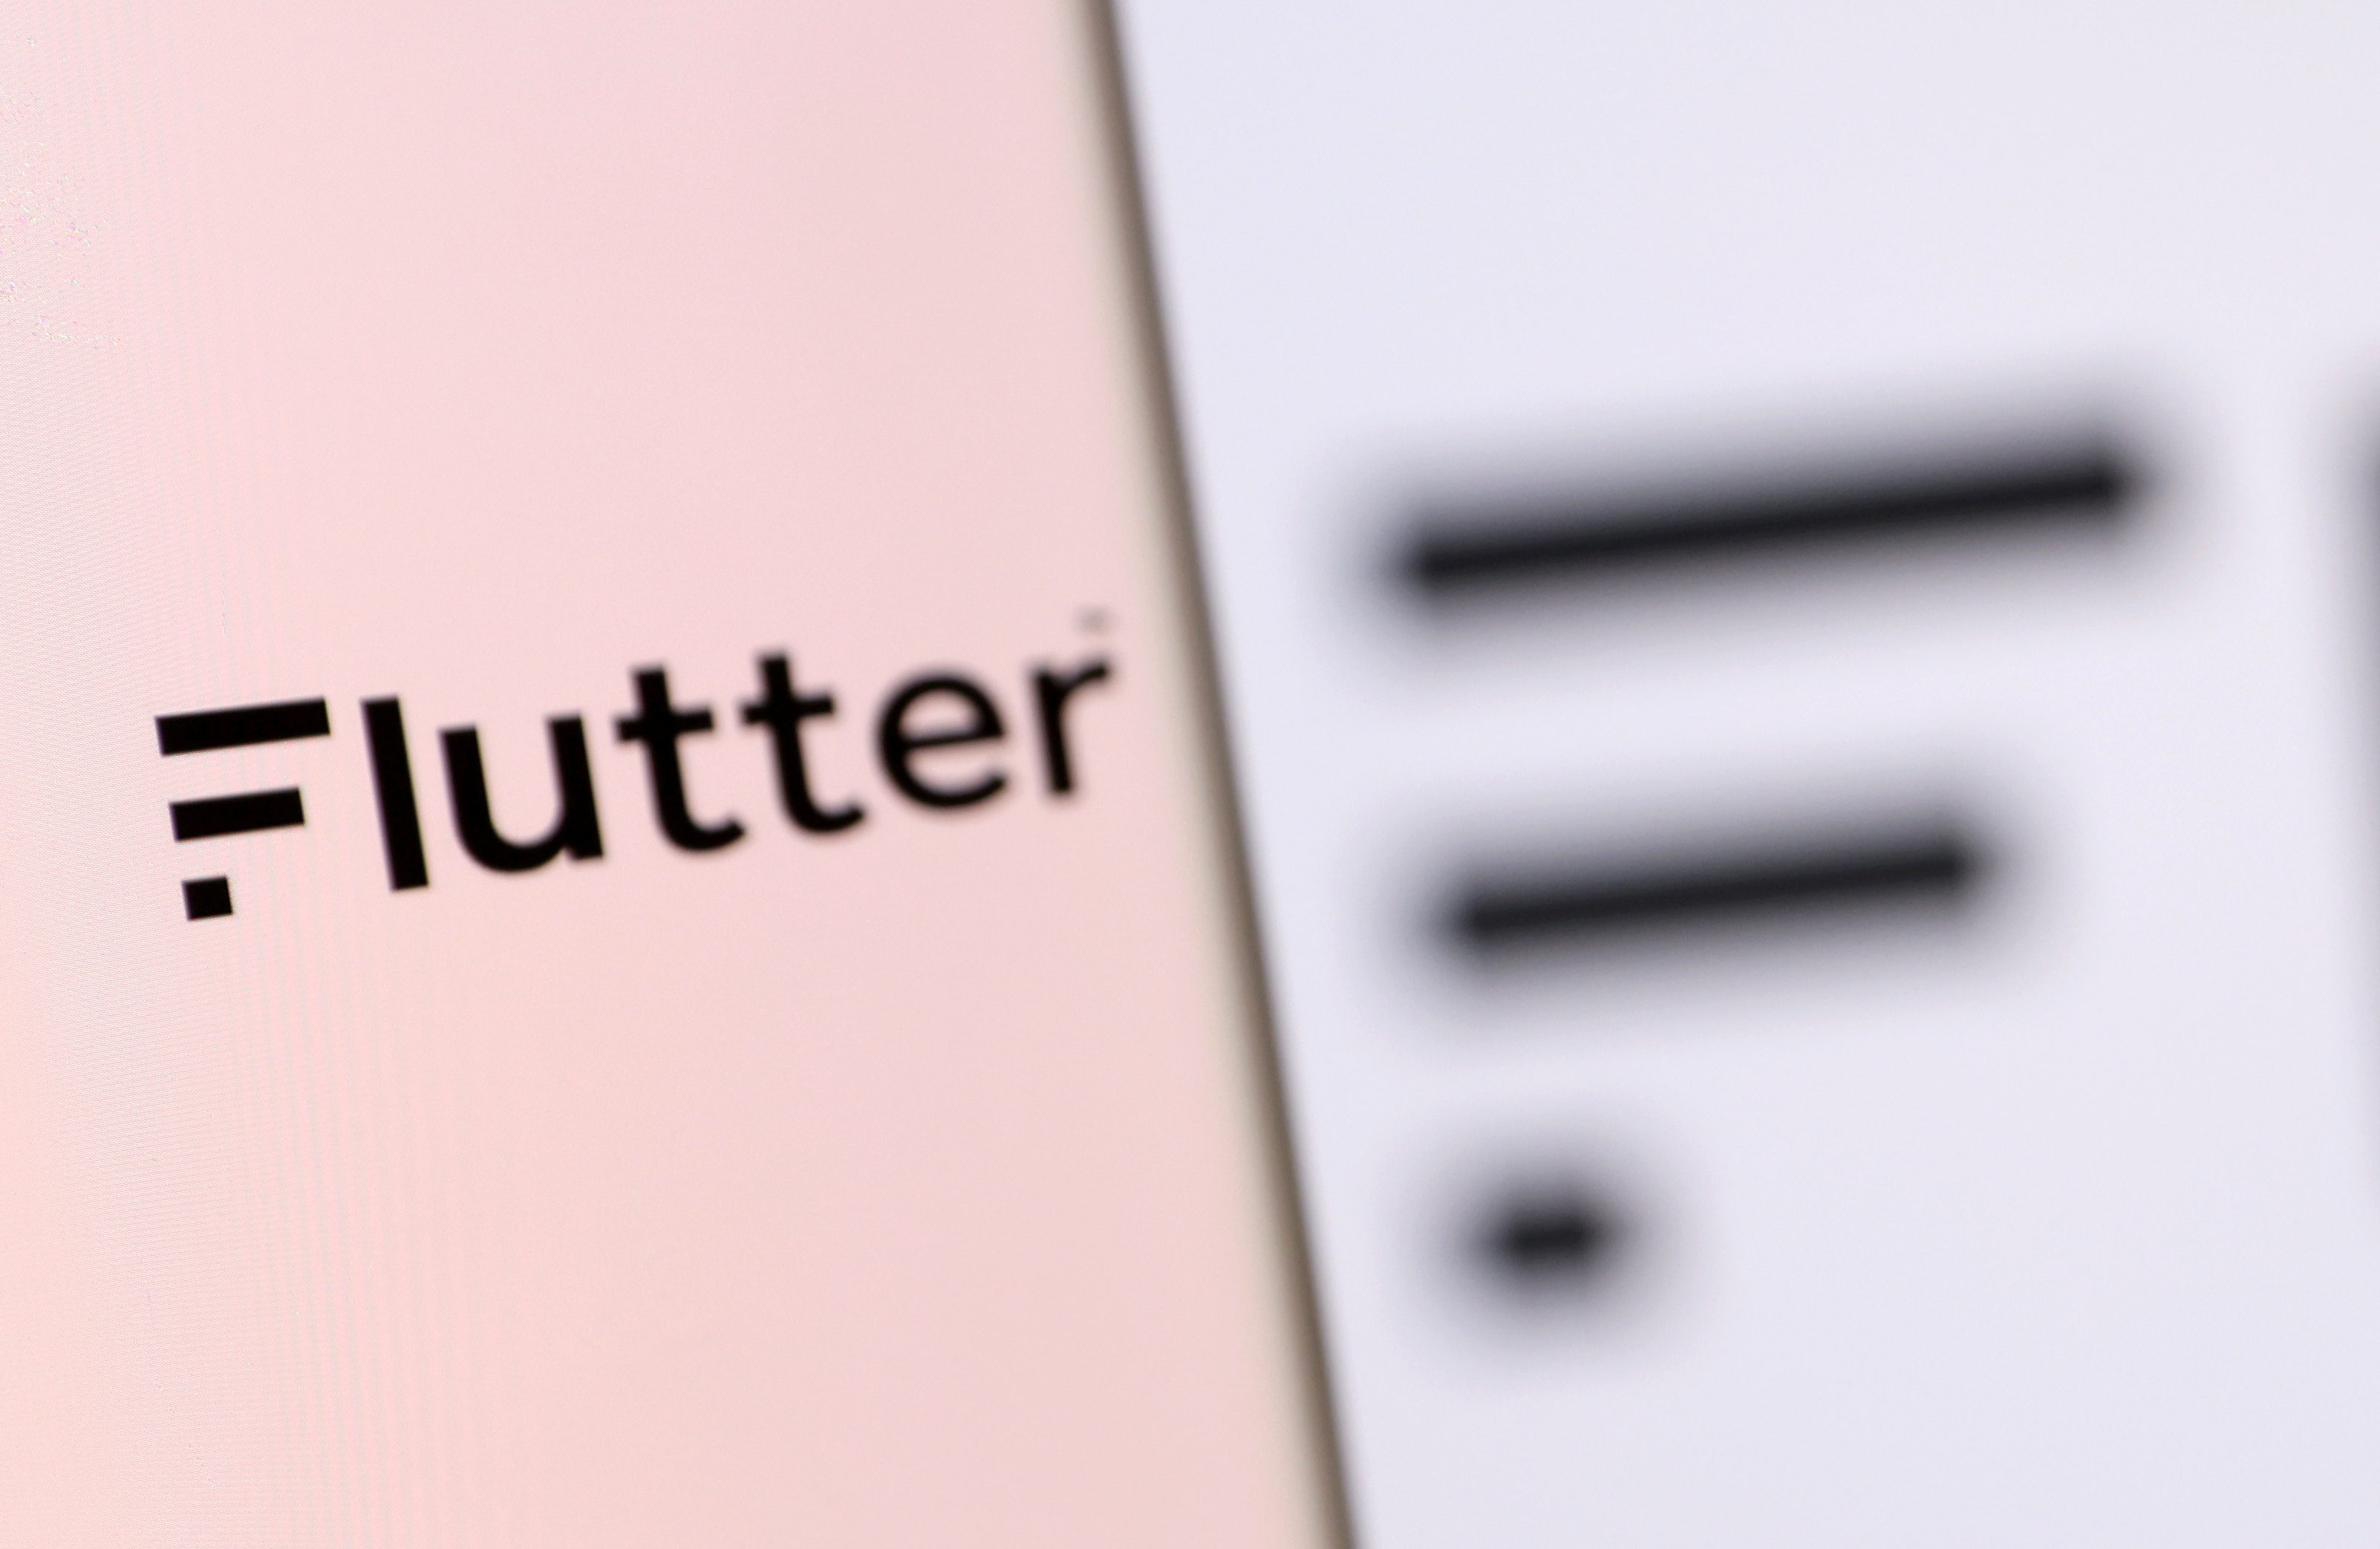 Illustration shows smartphone with Flutter's logo displayed